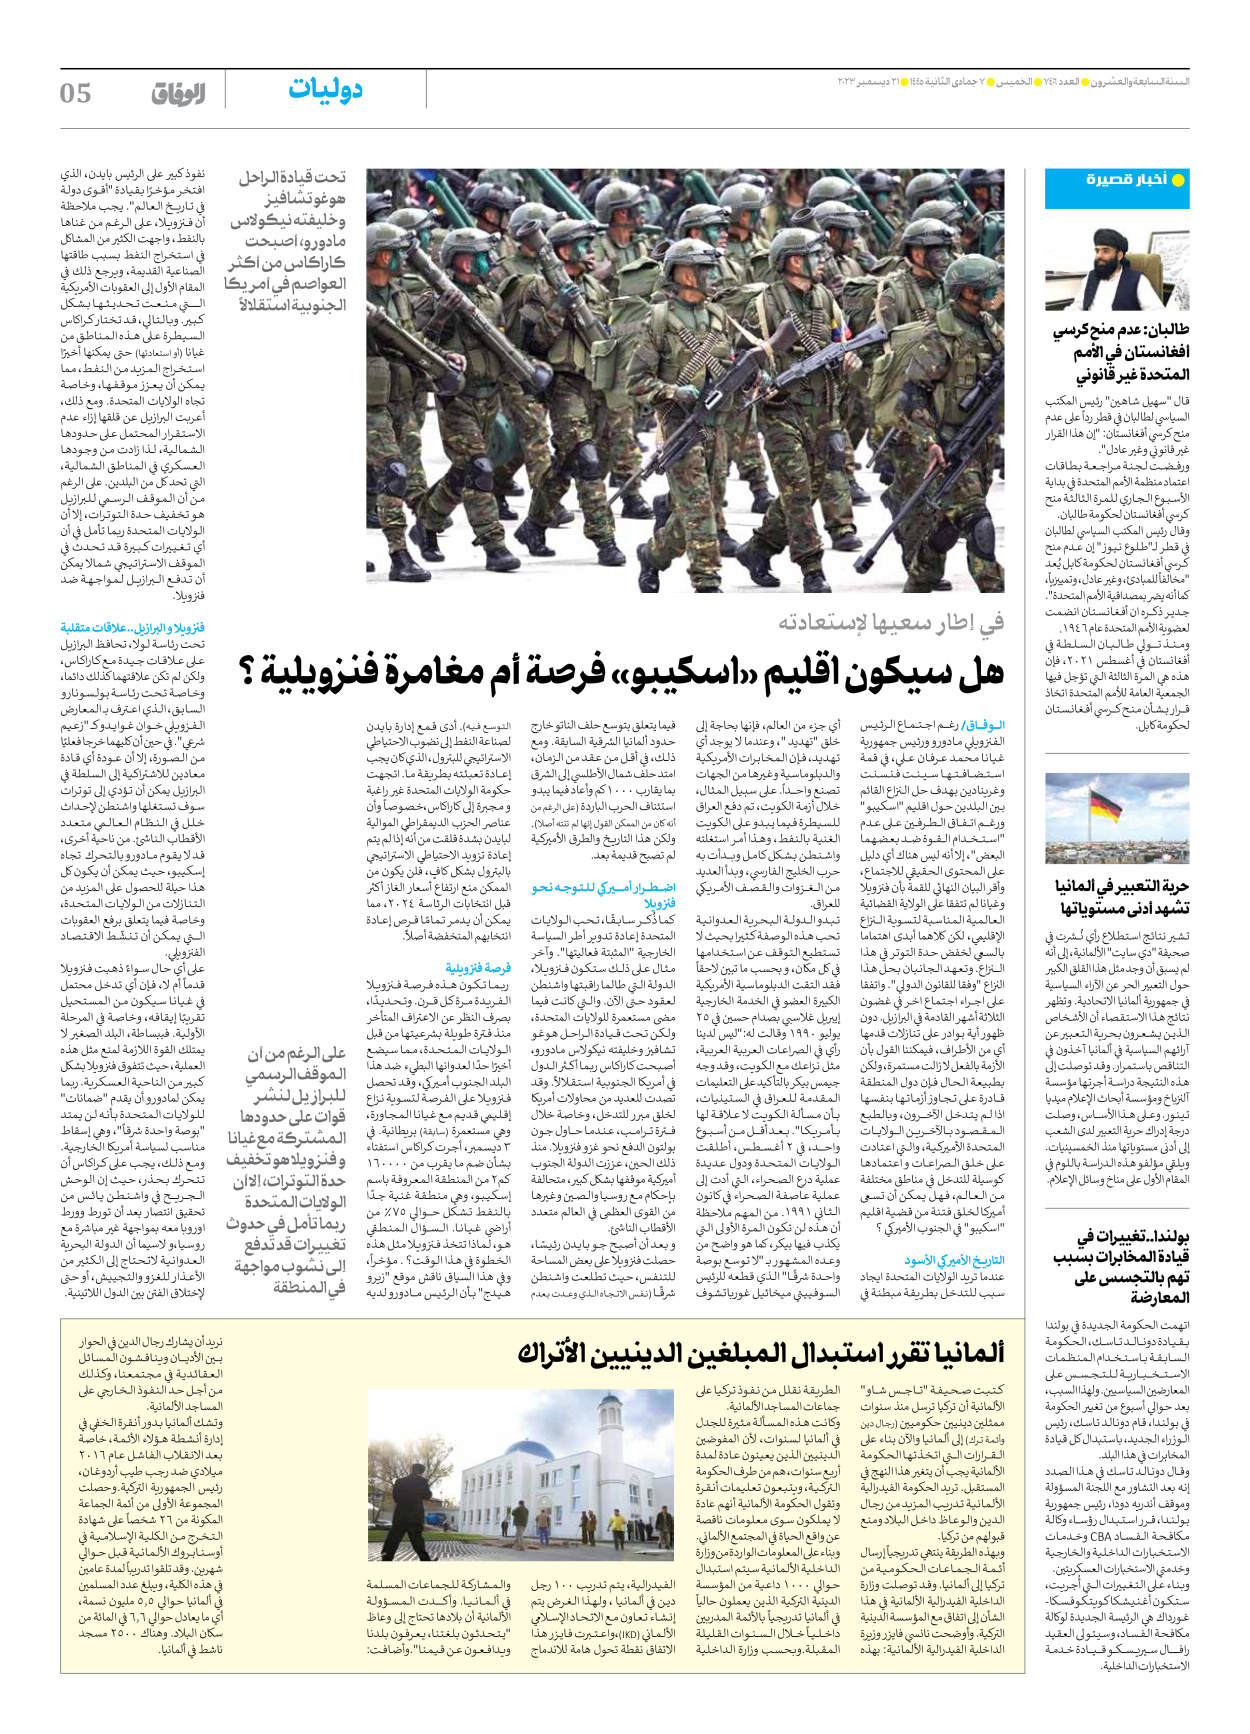 صحیفة ایران الدولیة الوفاق - العدد سبعة آلاف وأربعمائة وستة - ٢١ ديسمبر ٢٠٢٣ - الصفحة ٥